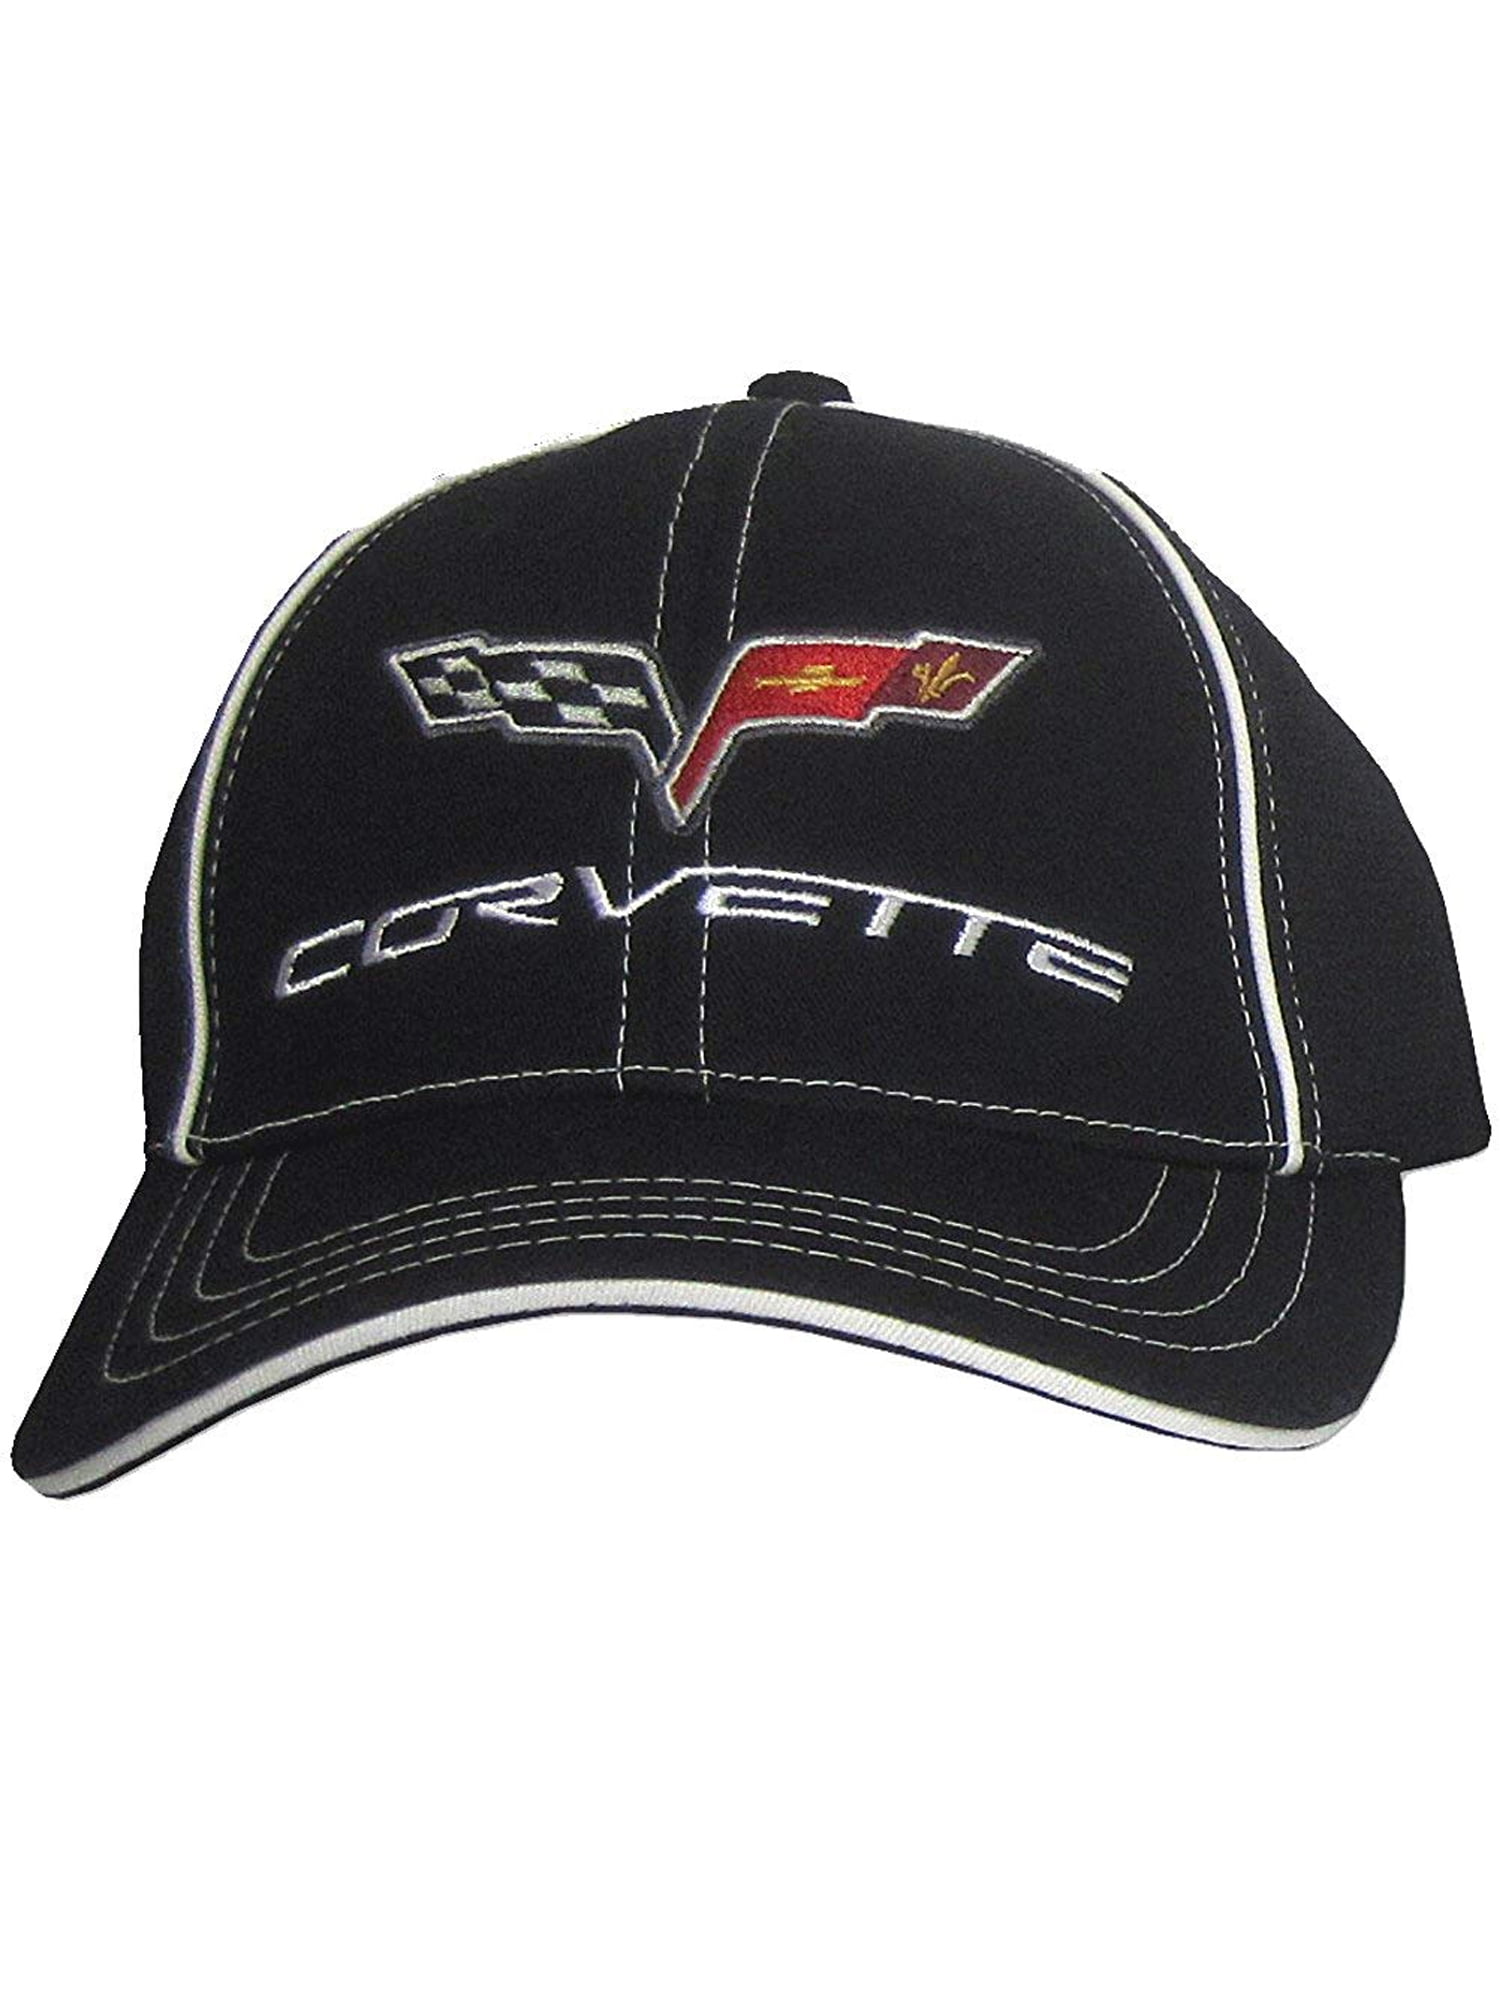 JRS Compatible C6 Corvette Performance Flex Fit Black Hat 